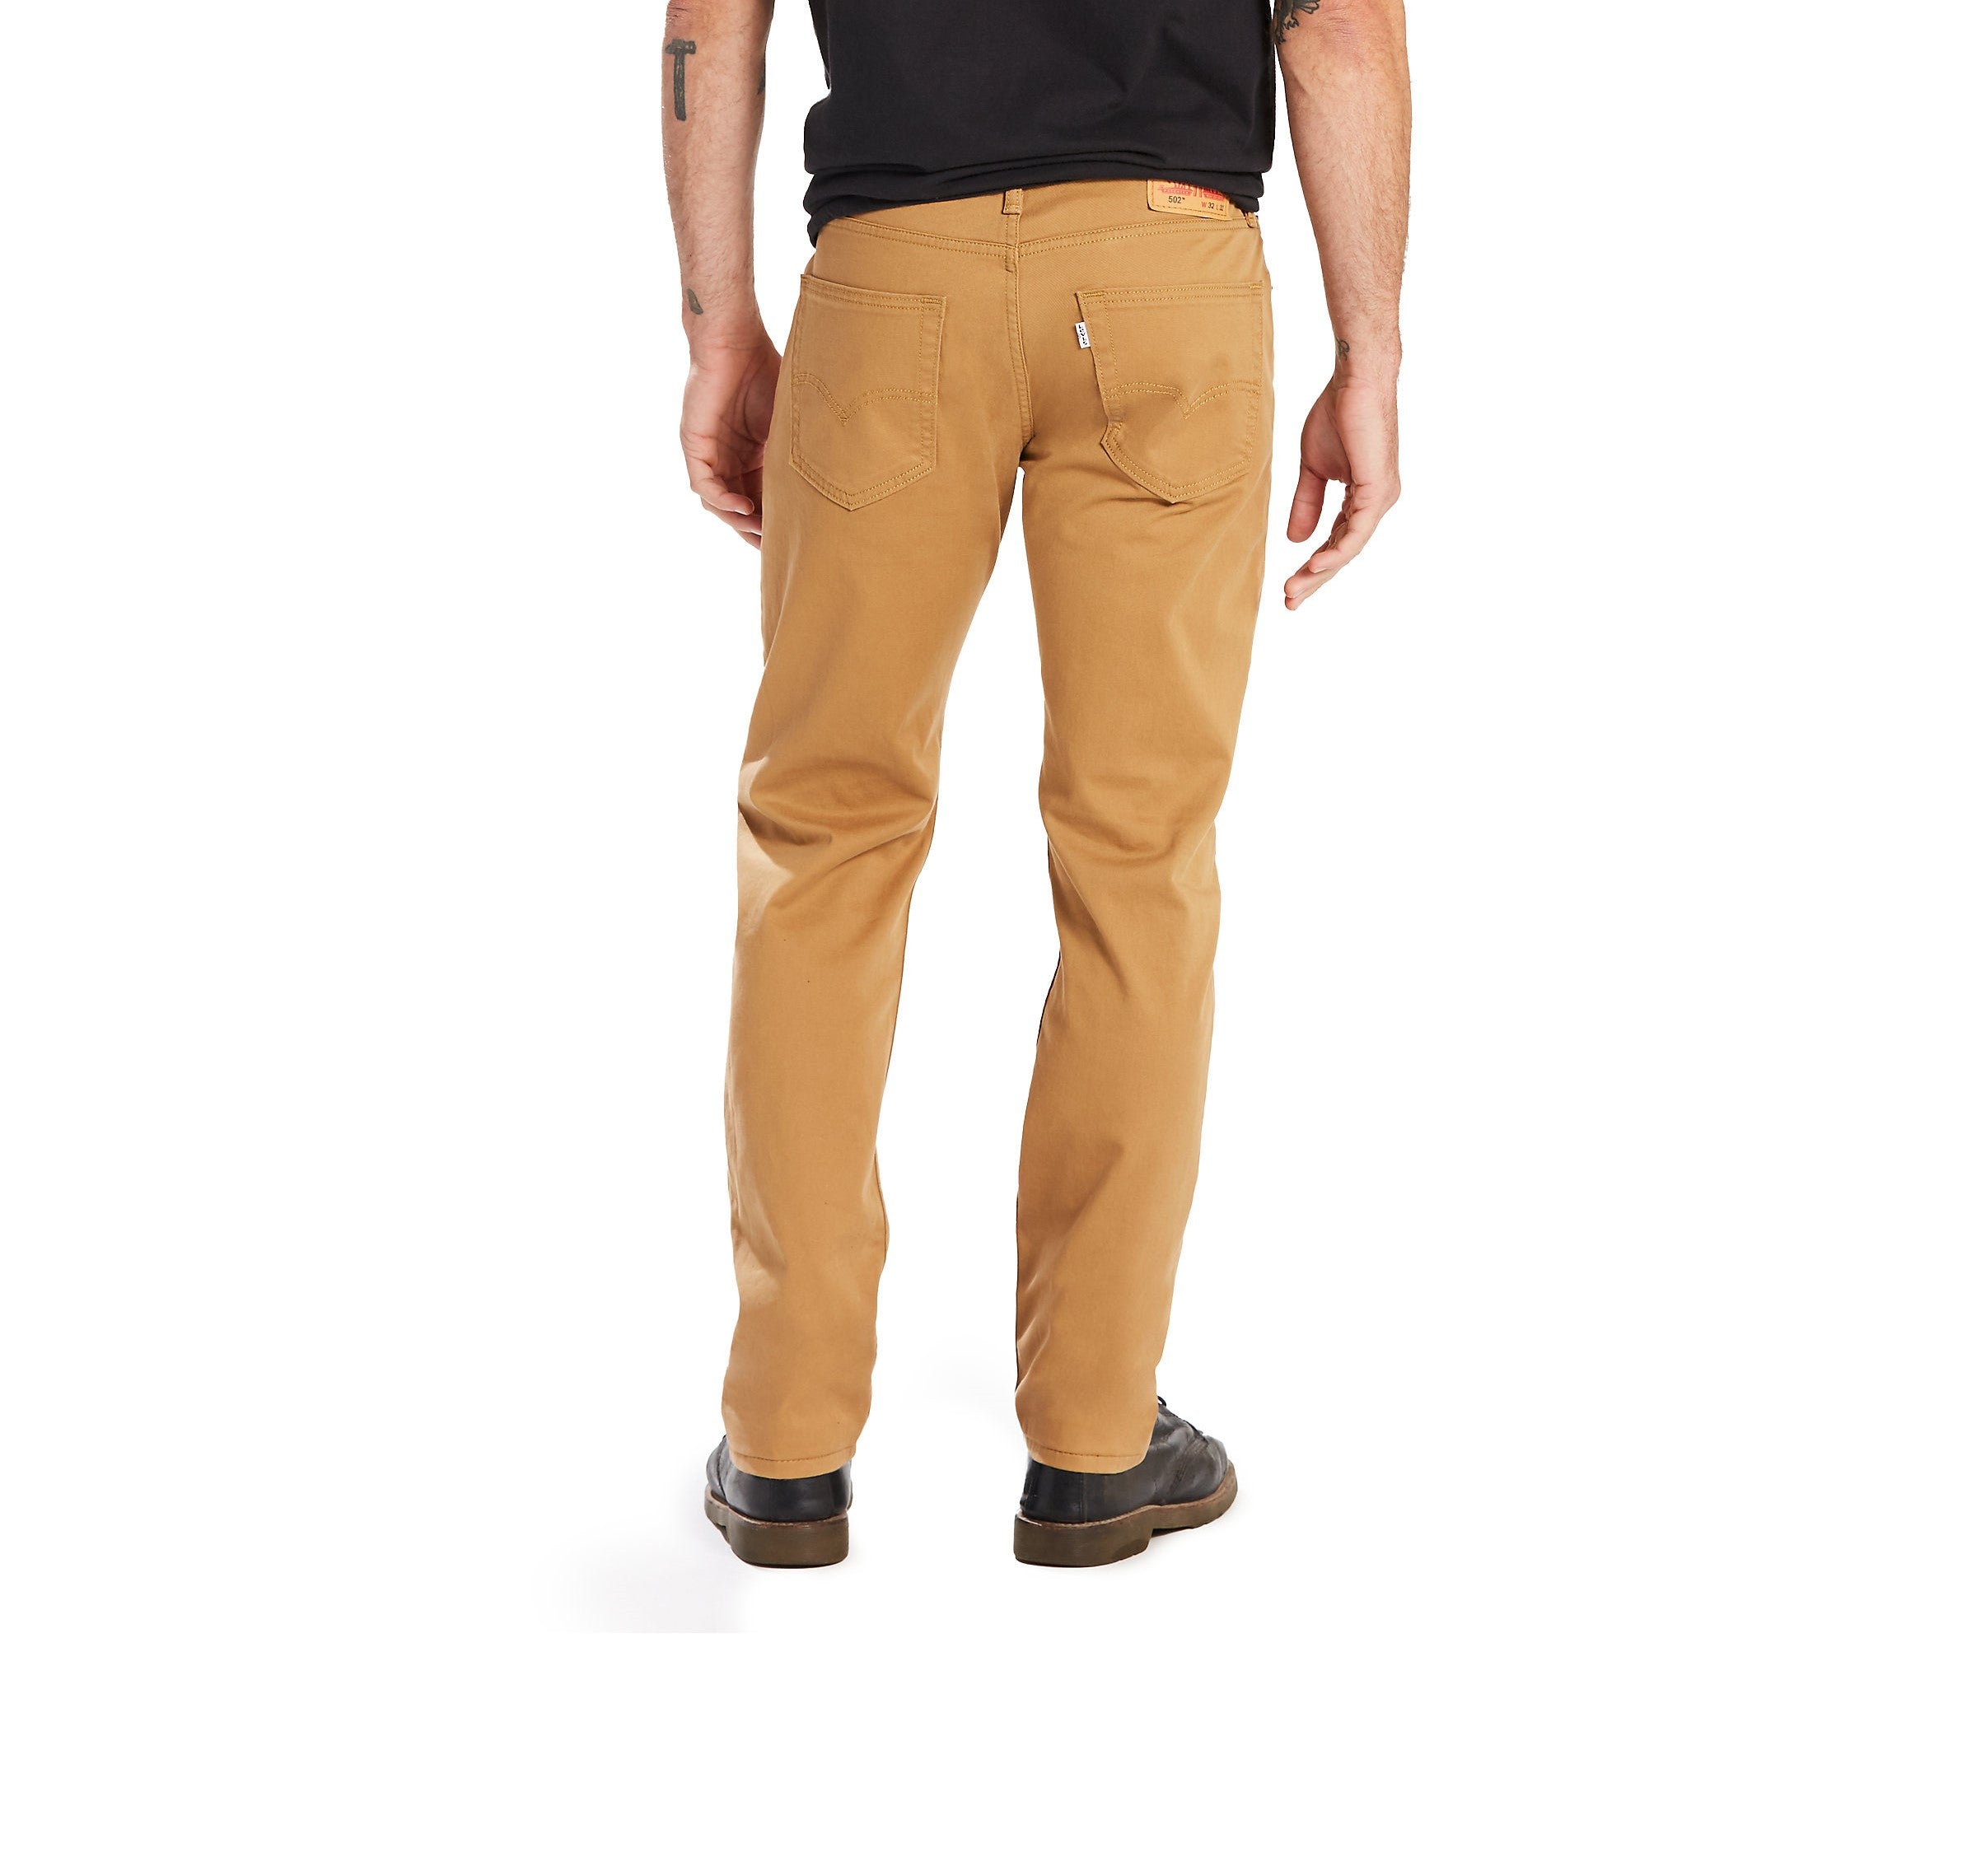 pantalon-jeans-levis-502-regular-fit-p-caballeros